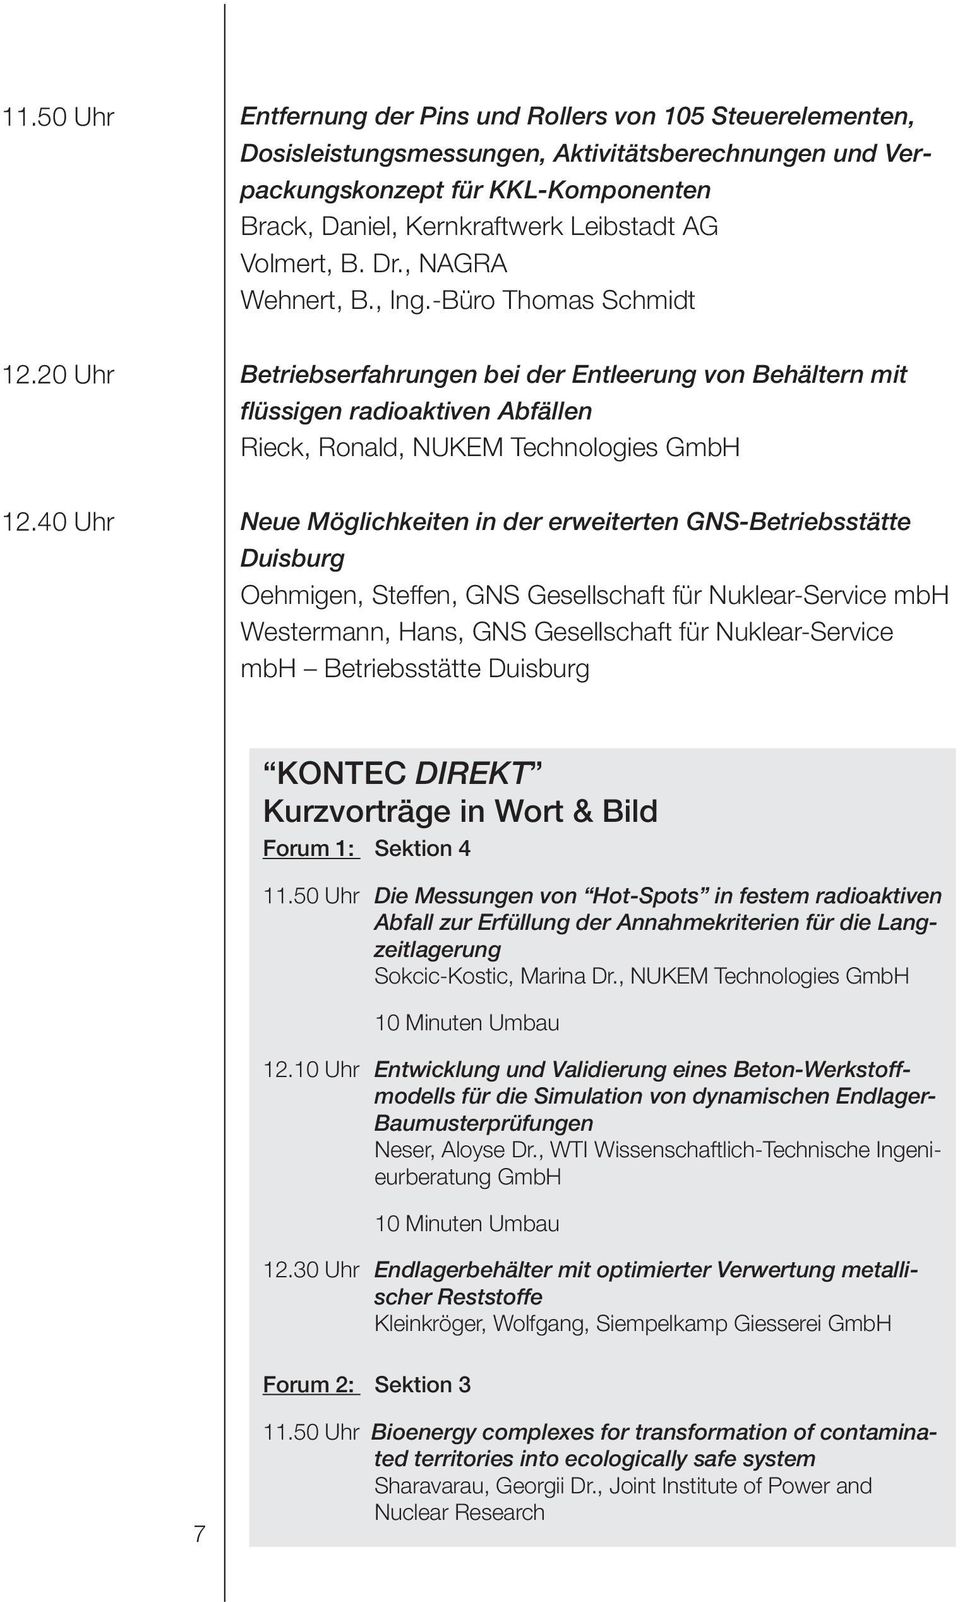 20 Uhr Betriebserfahrungen bei der Entleerung von Behältern mit flüssigen radioaktiven Abfällen Rieck, Ronald, NUKEM Technologies GmbH 12.